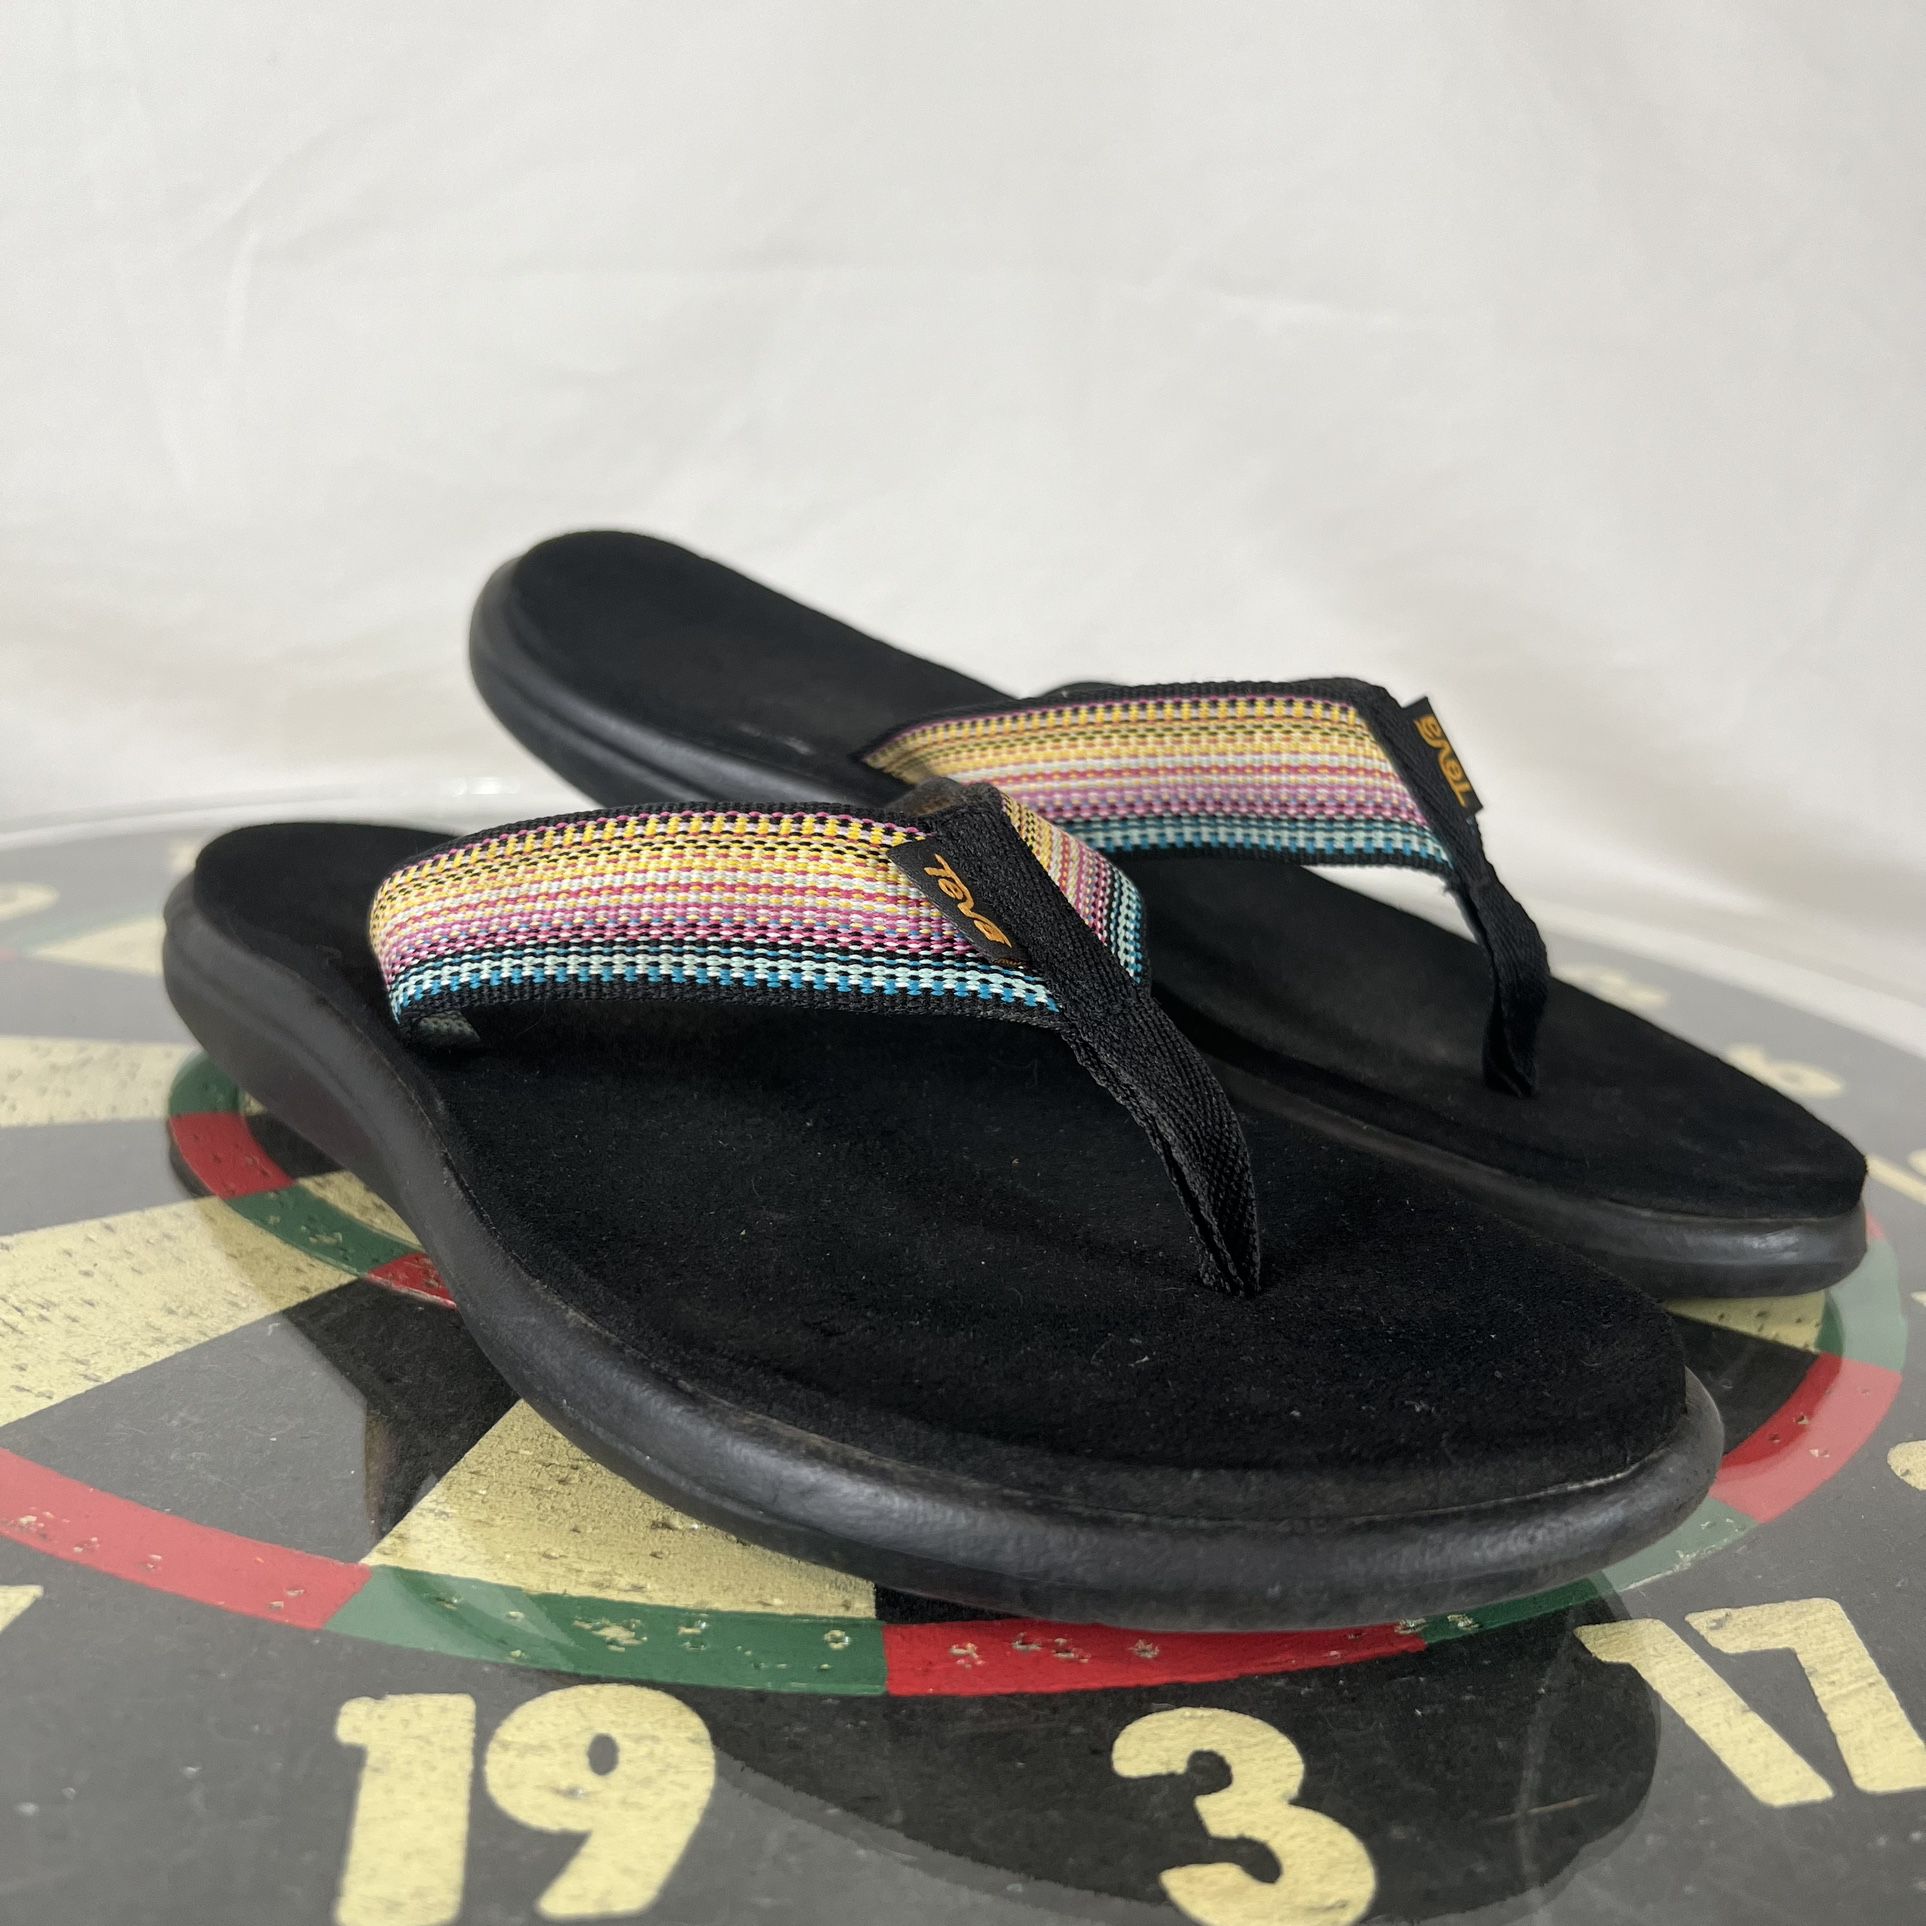 Teva Voya Flip Flop Sandals Antiguous Black Foam Multicolor Thong Womens Size 7